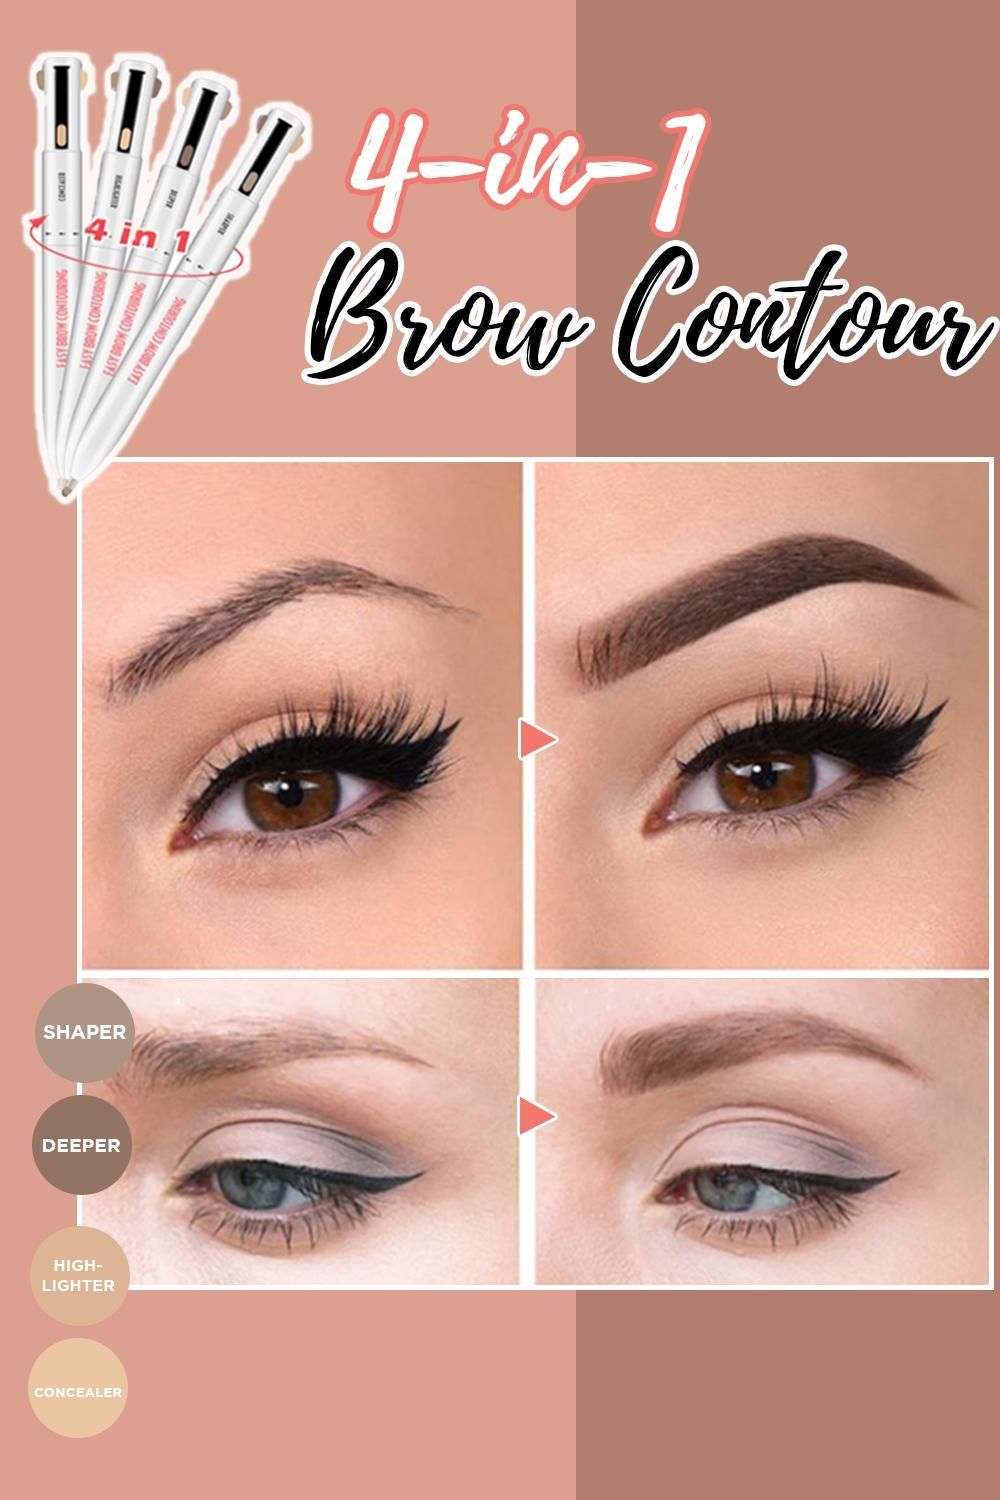 4-in-1 Brow Contour & Highlight Pen -   17 makeup Face contouring ideas